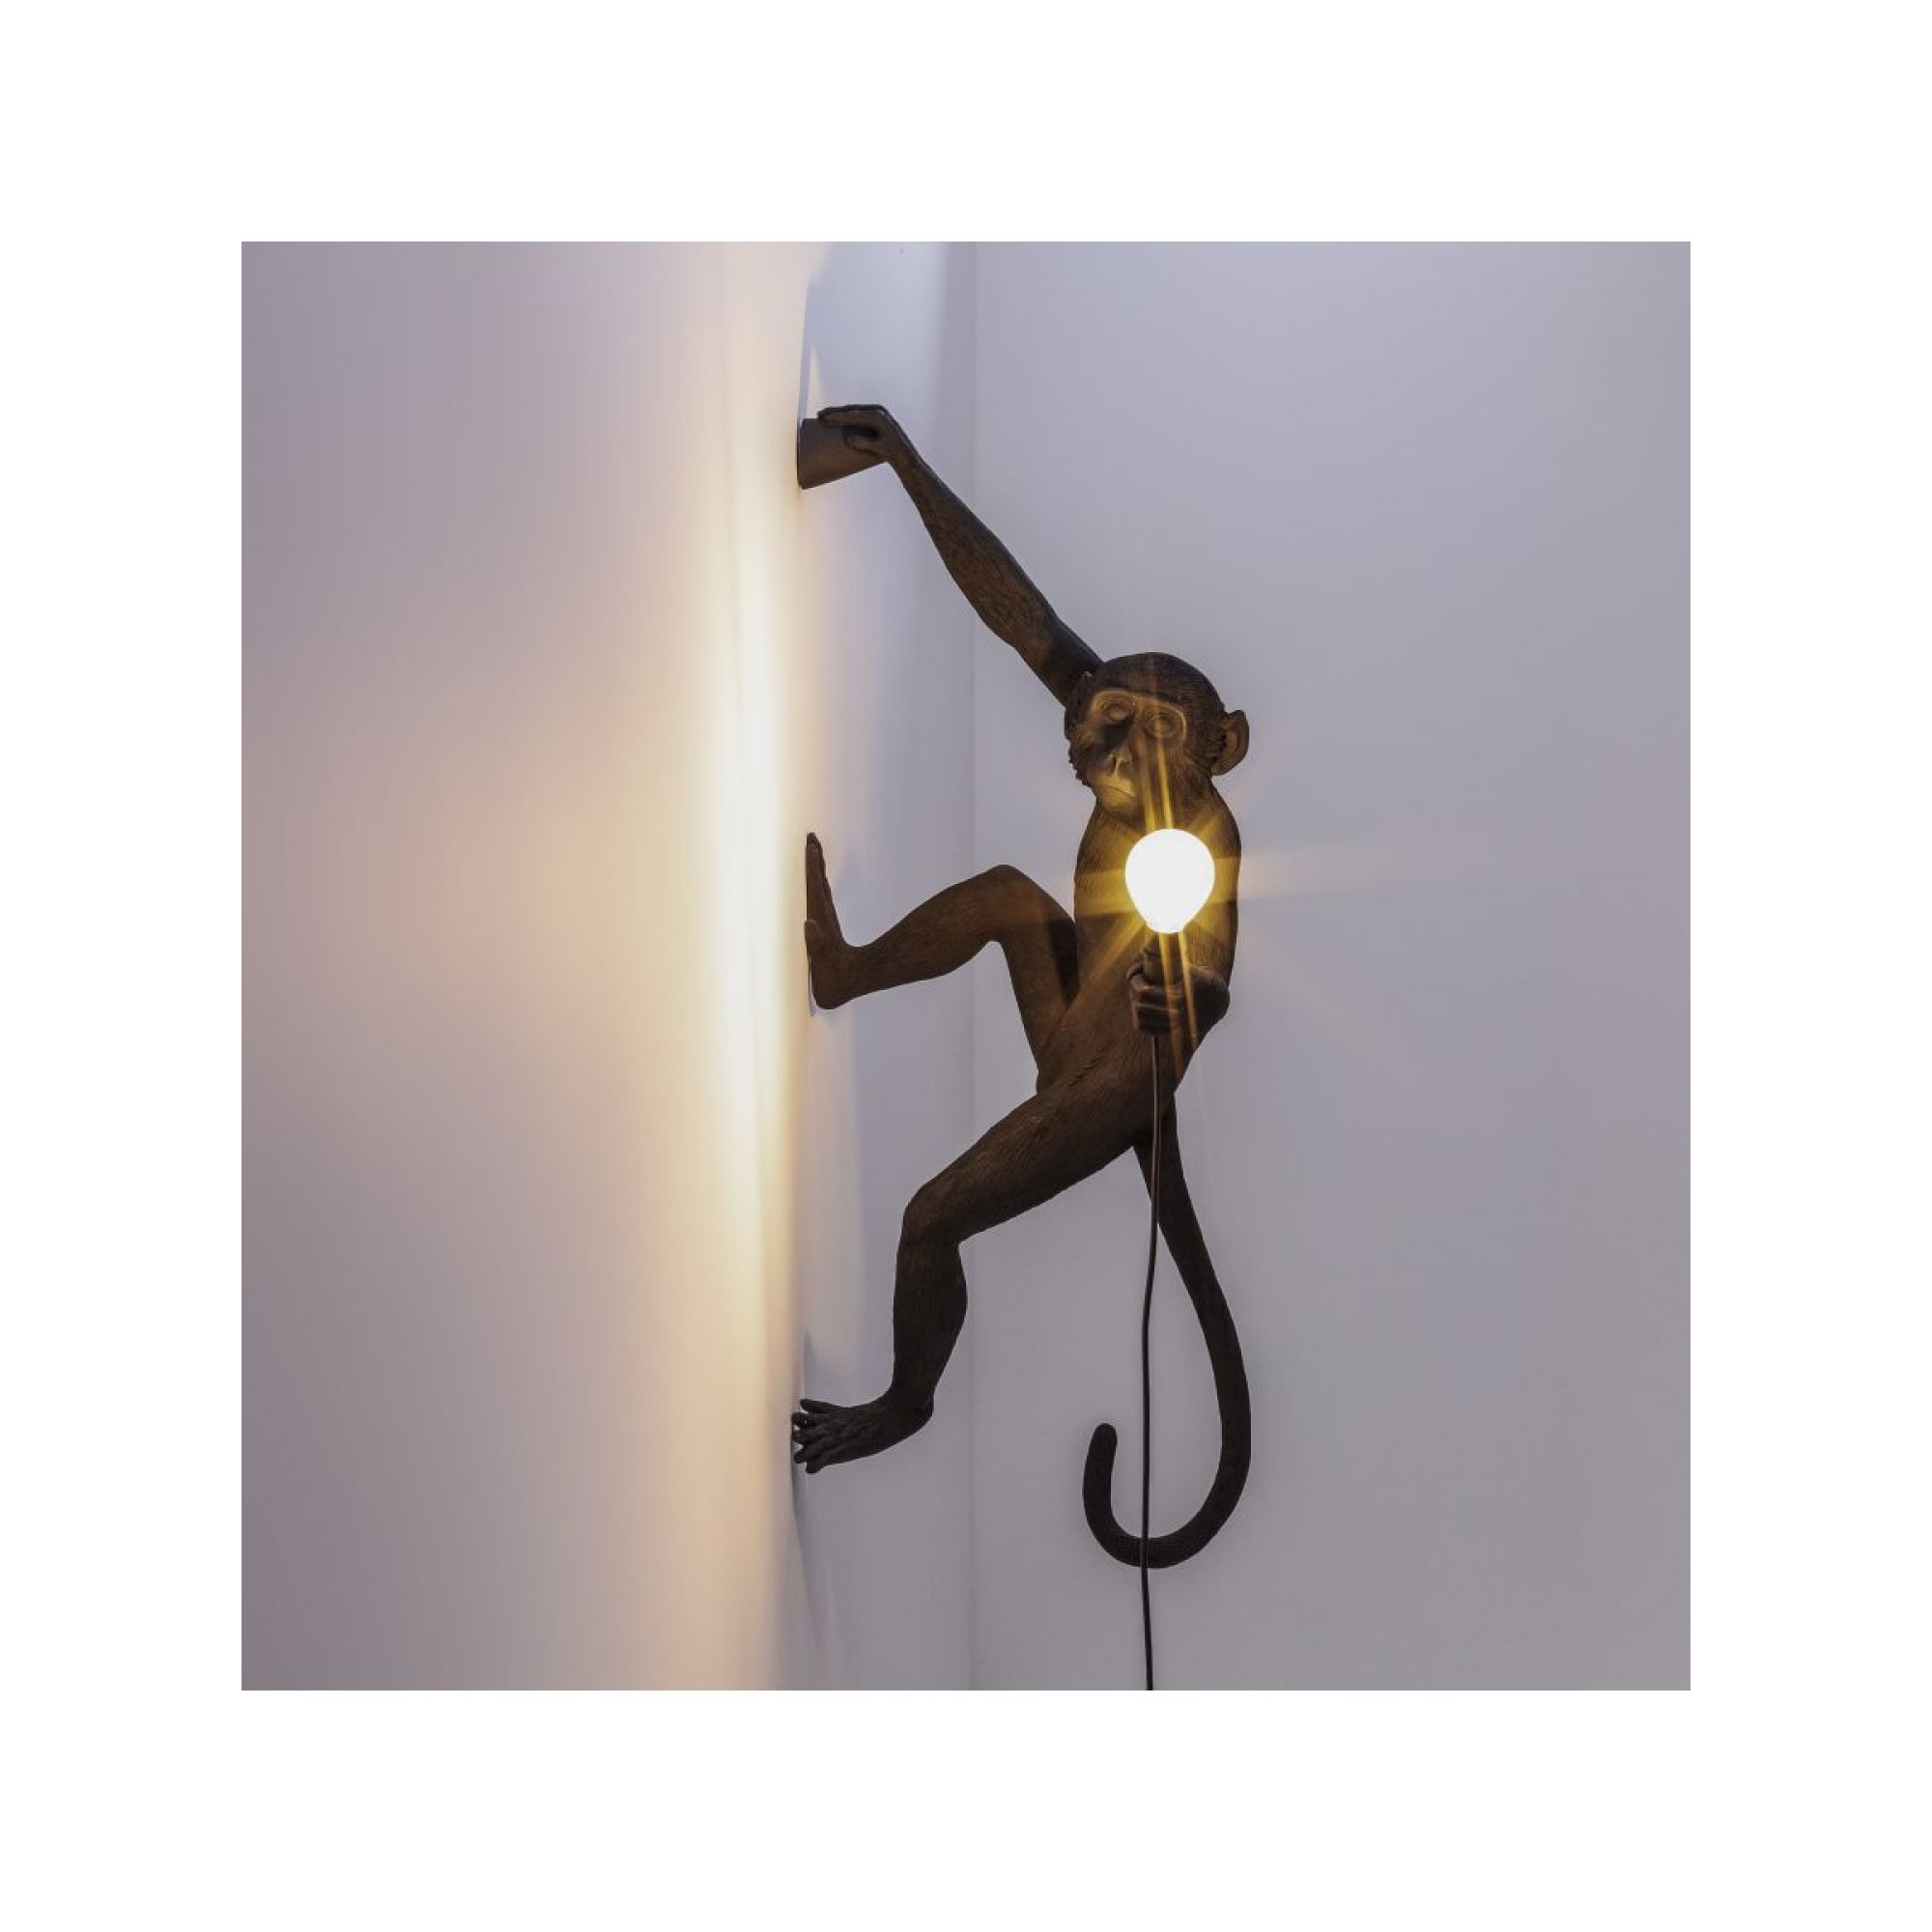 MONKEY LAMP HANGING OUTDOOR, Lampade Parete Applique, Illuminazione